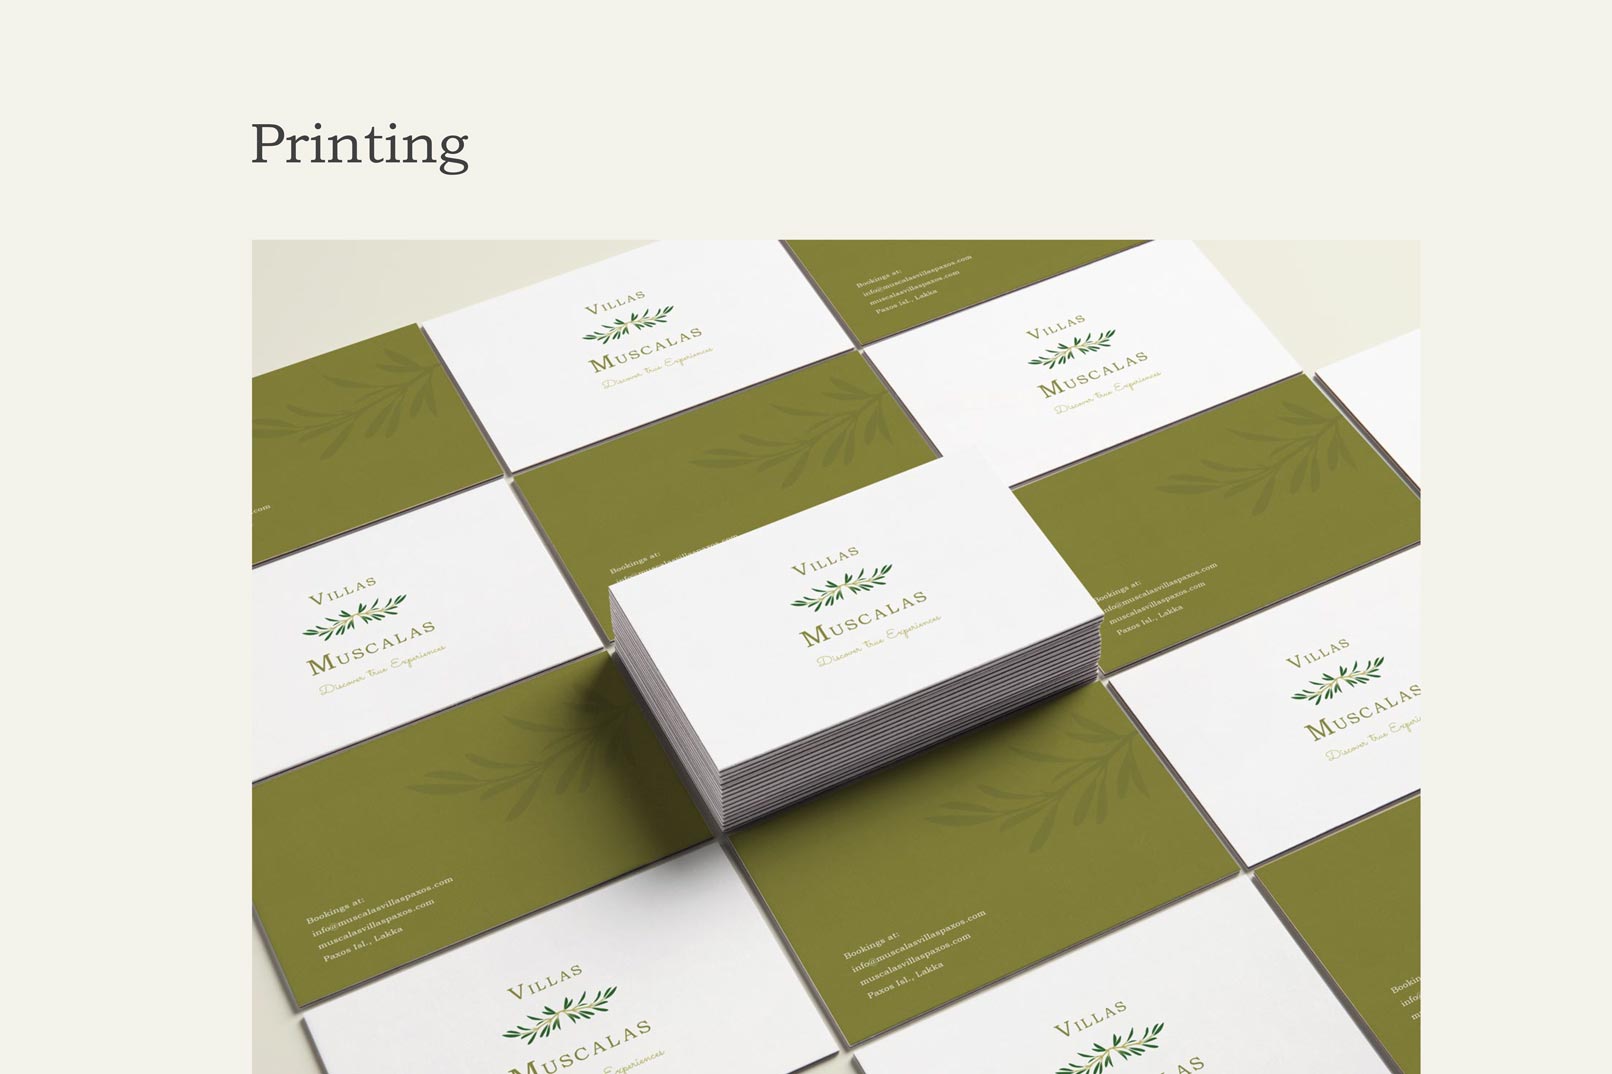 motivar portfolio branding villas muscalas printing